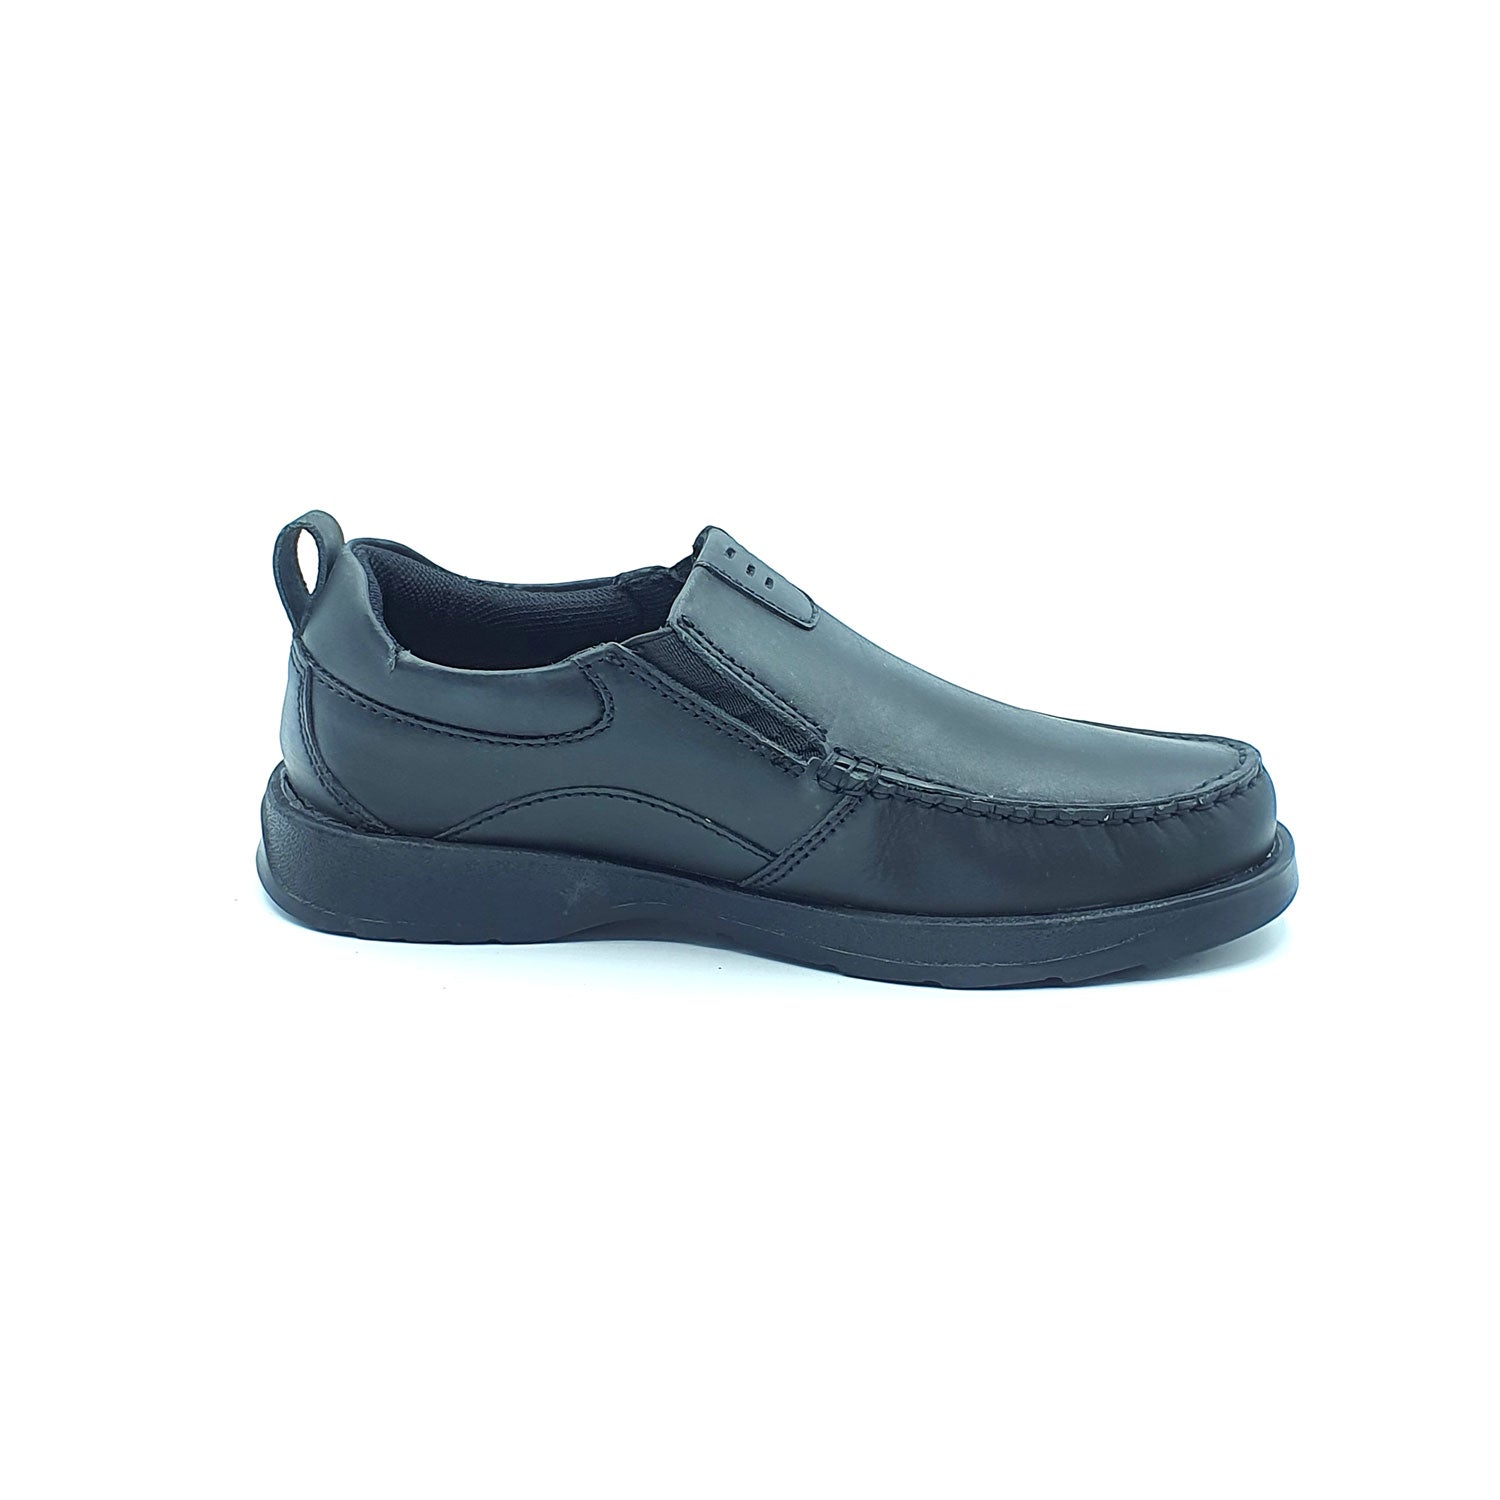 Dubarry Karter Junior Slip On Av8 Shoe - Black 5 Shaws Department Stores